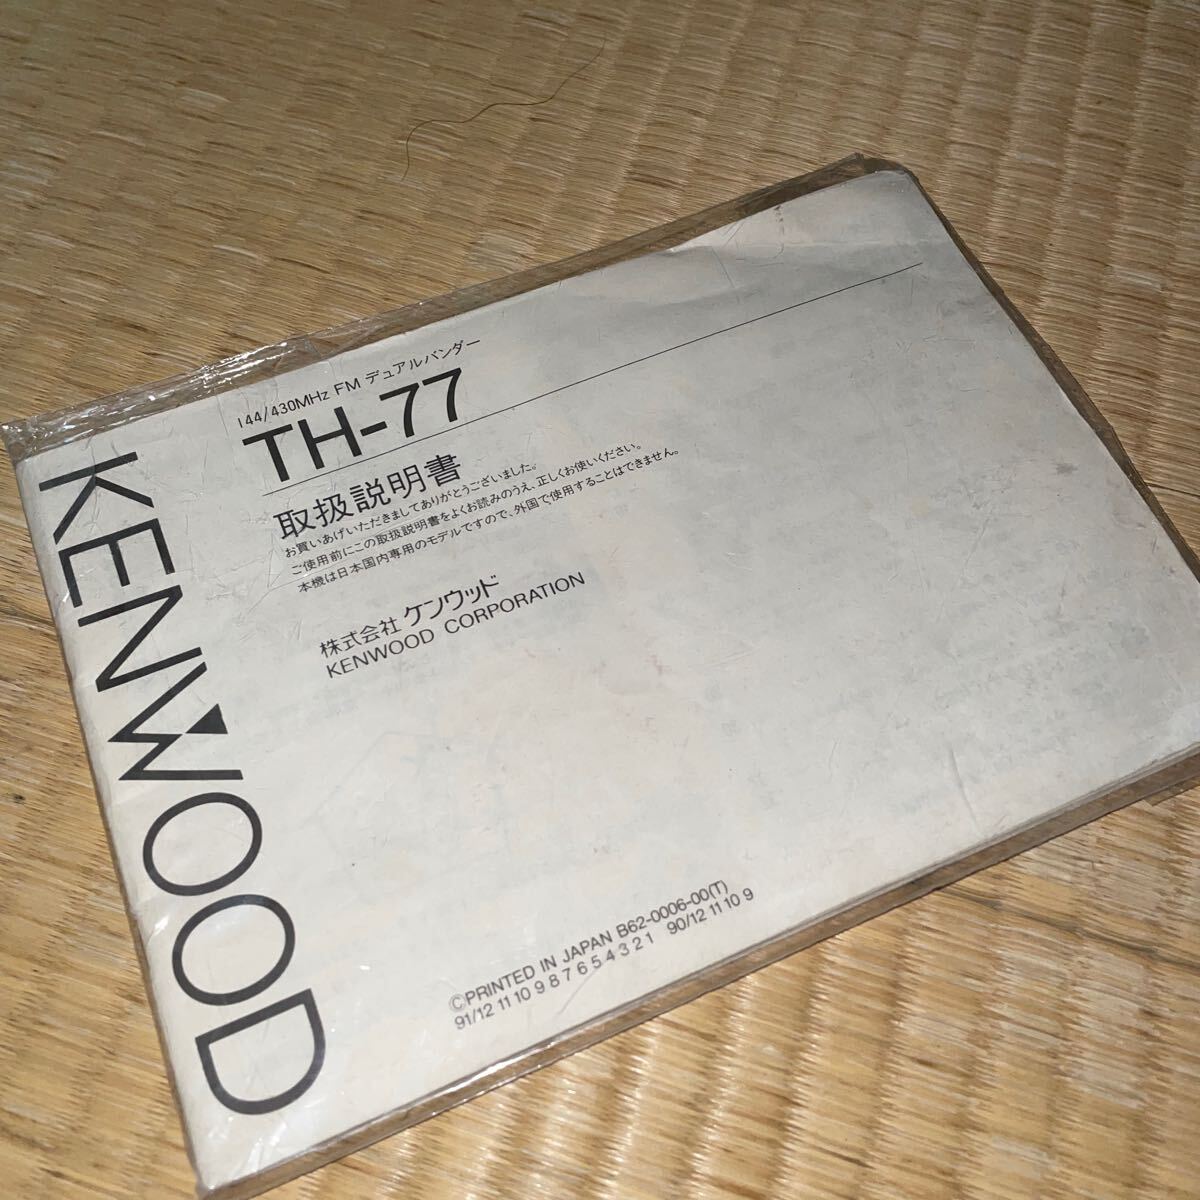 [ б/у ]KENWOOD Kenwood TH-77 радиолюбительская связь 